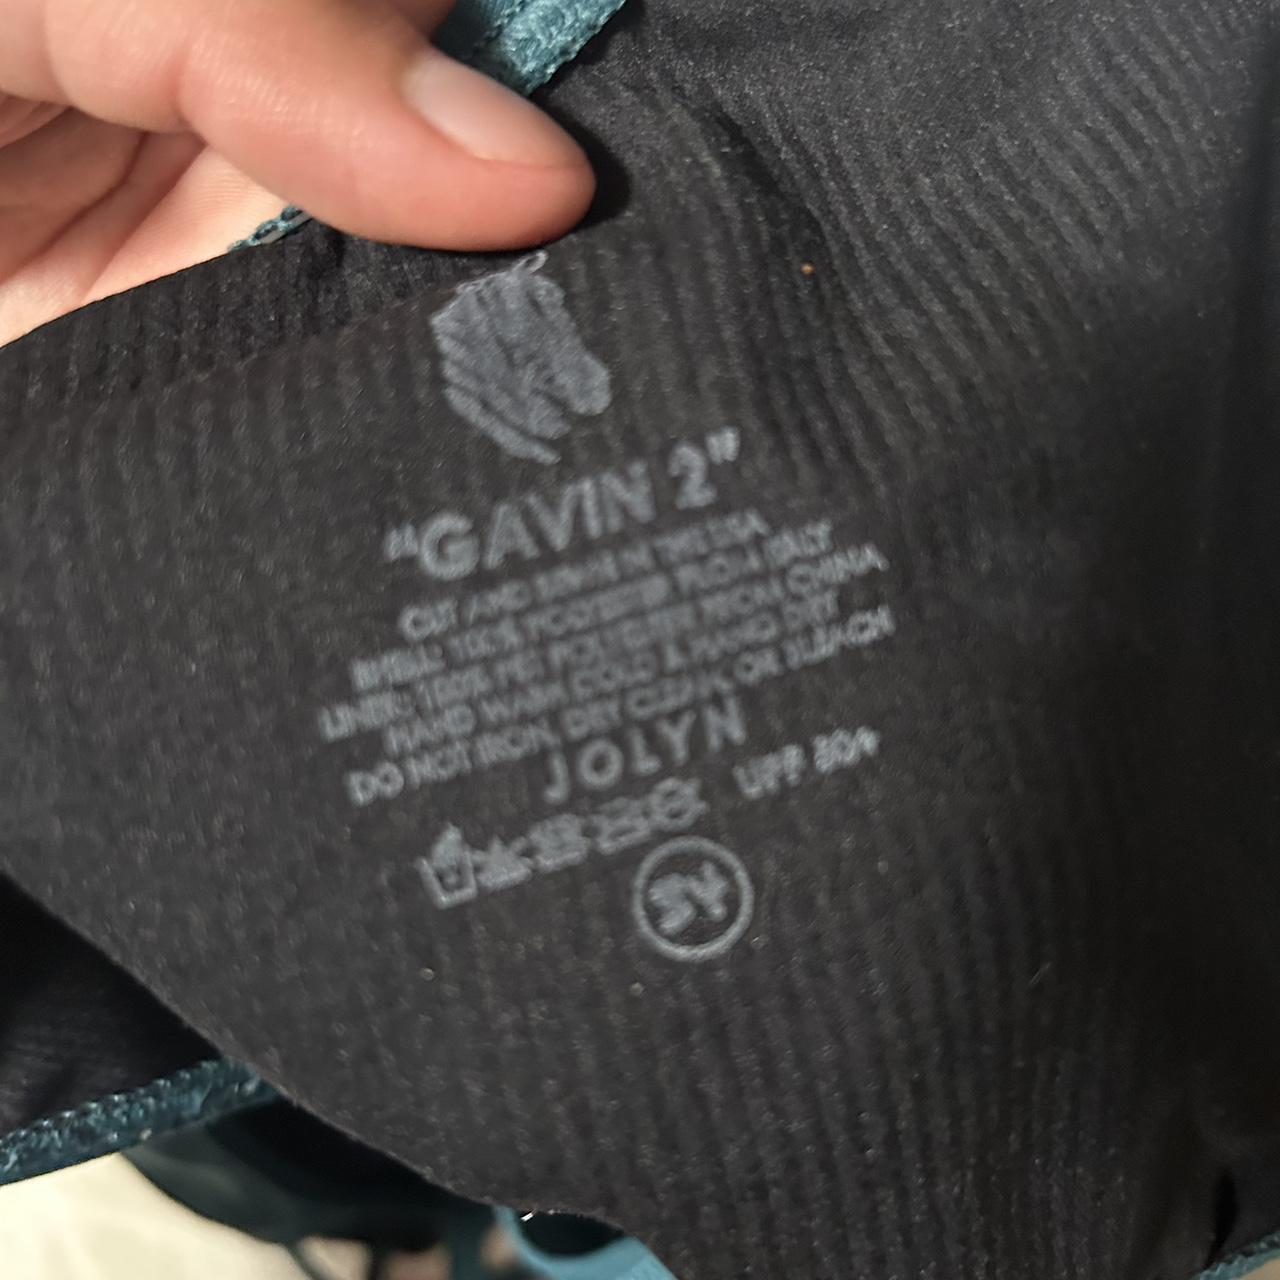 Gavin 2 Jolyn Swimsuit Size 34 too big on... - Depop